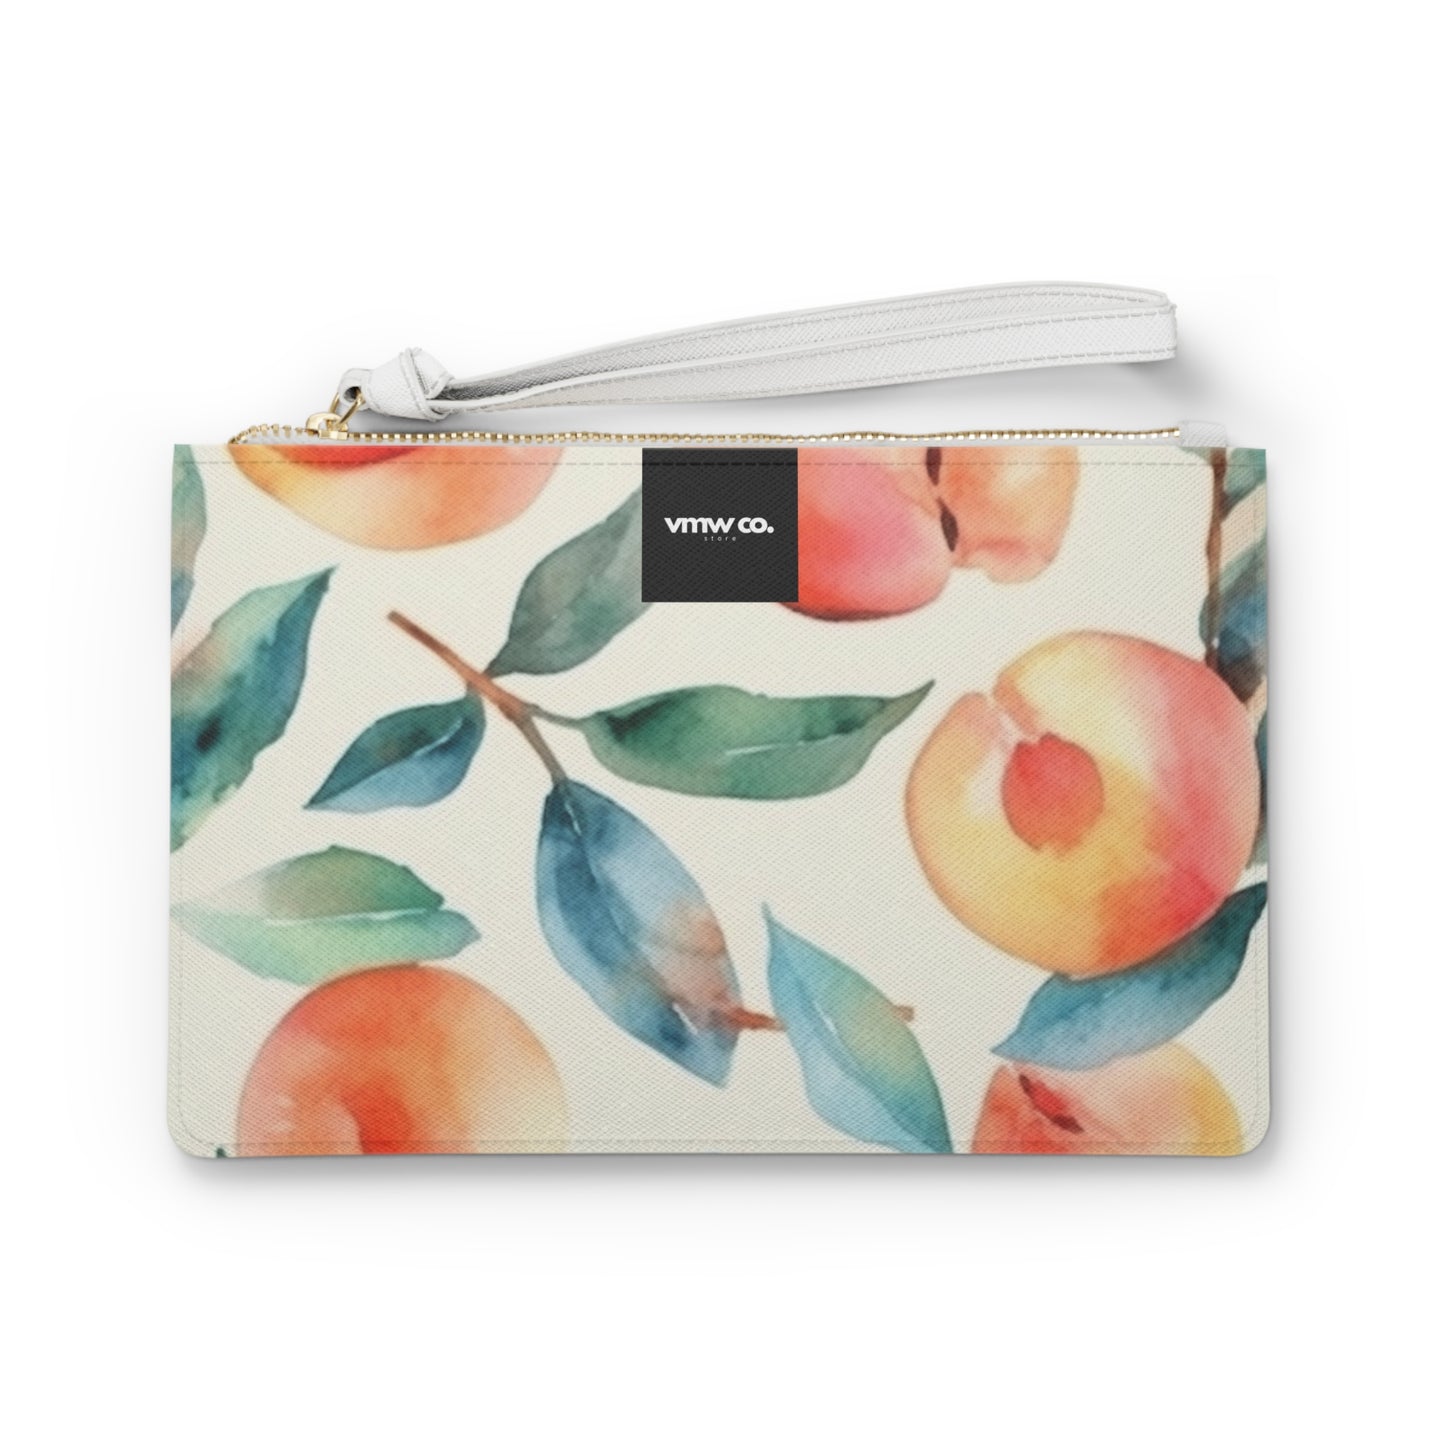 Autumn Peaches Clutch Bag